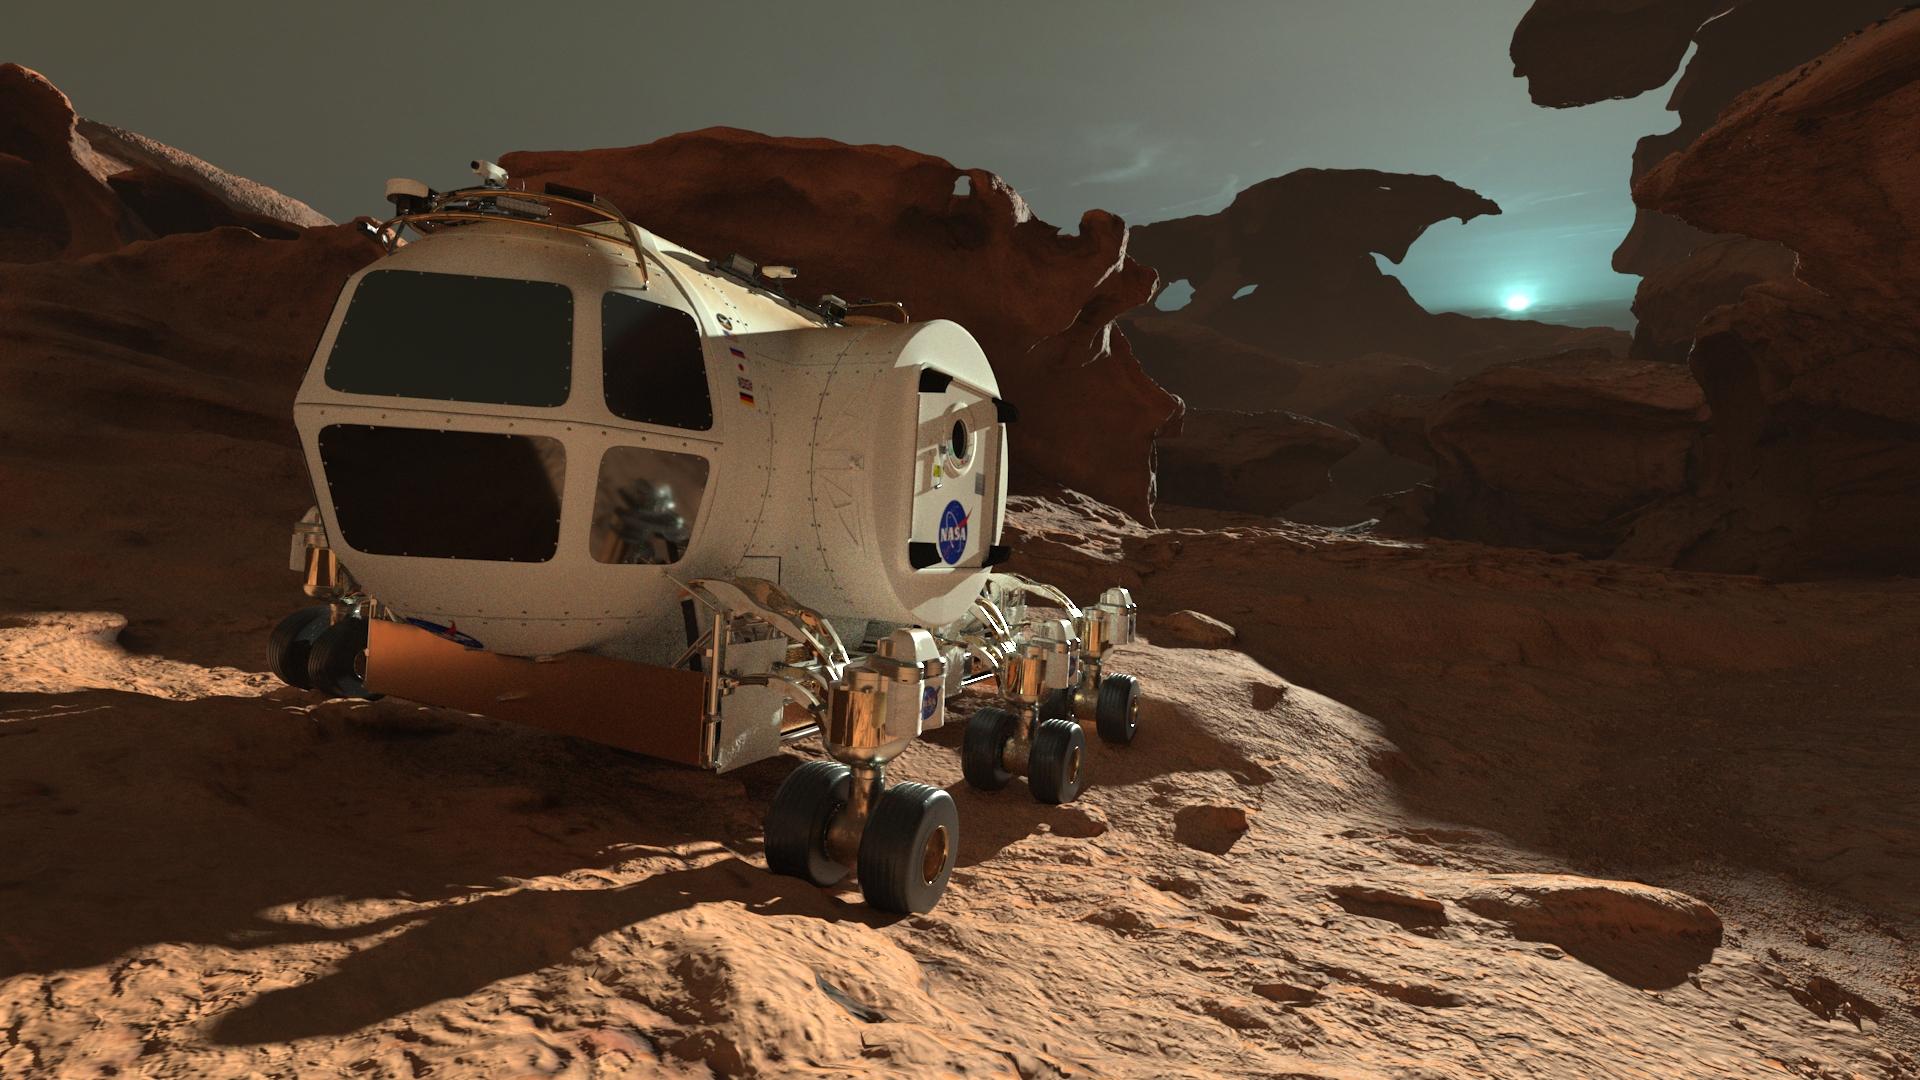 香港太空馆天象厅五月一日起放映全新天象节目《火星千日行》，让观众踏上虚拟旅程，跟随太空人展开为期1,001日的首次载人登陆火星虚构任务，一同探索这红色行星。图示节目中太空人在火星上移动时乘坐的载具。火星昼夜温差极大，令太空人不能长期逗留在室外。（图片来源：© Mirage3D）